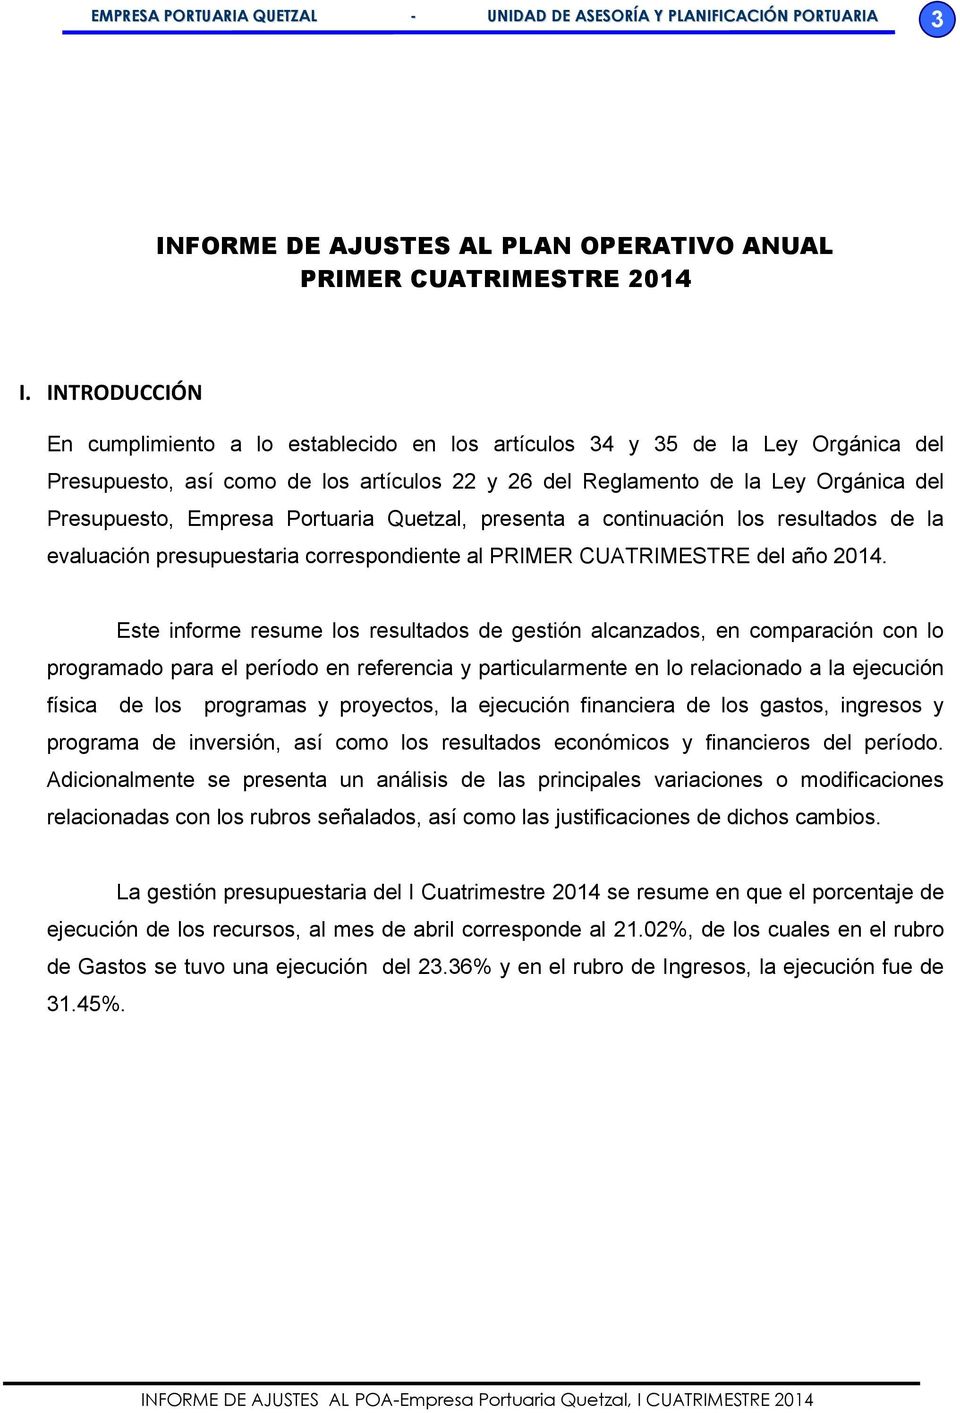 Portuaria Quetzal, presenta a continuación los resultados de la evaluación presupuestaria correspondiente al PRIMER del año 2014.